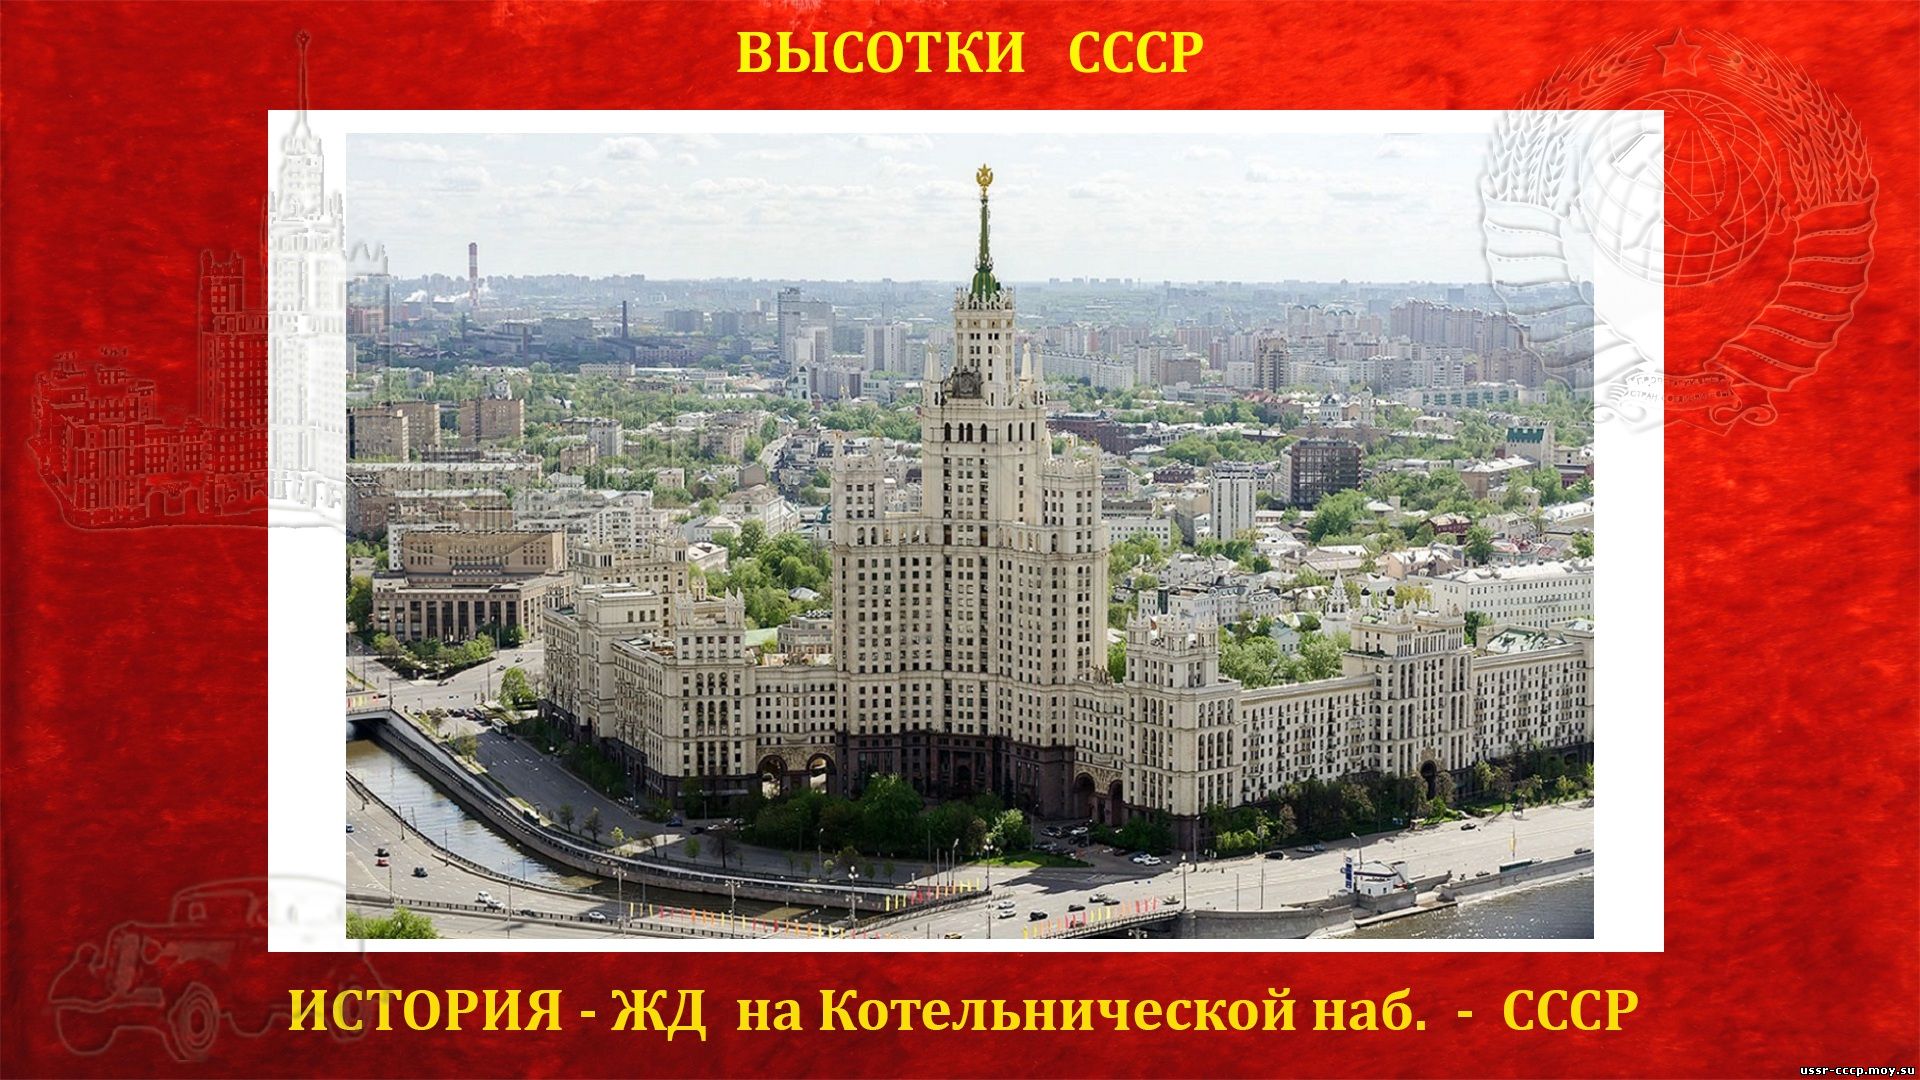 Жилой дом на Котельнической набережной (Москва) — (Сталинская высотка) — История строительства высотки (повествование)